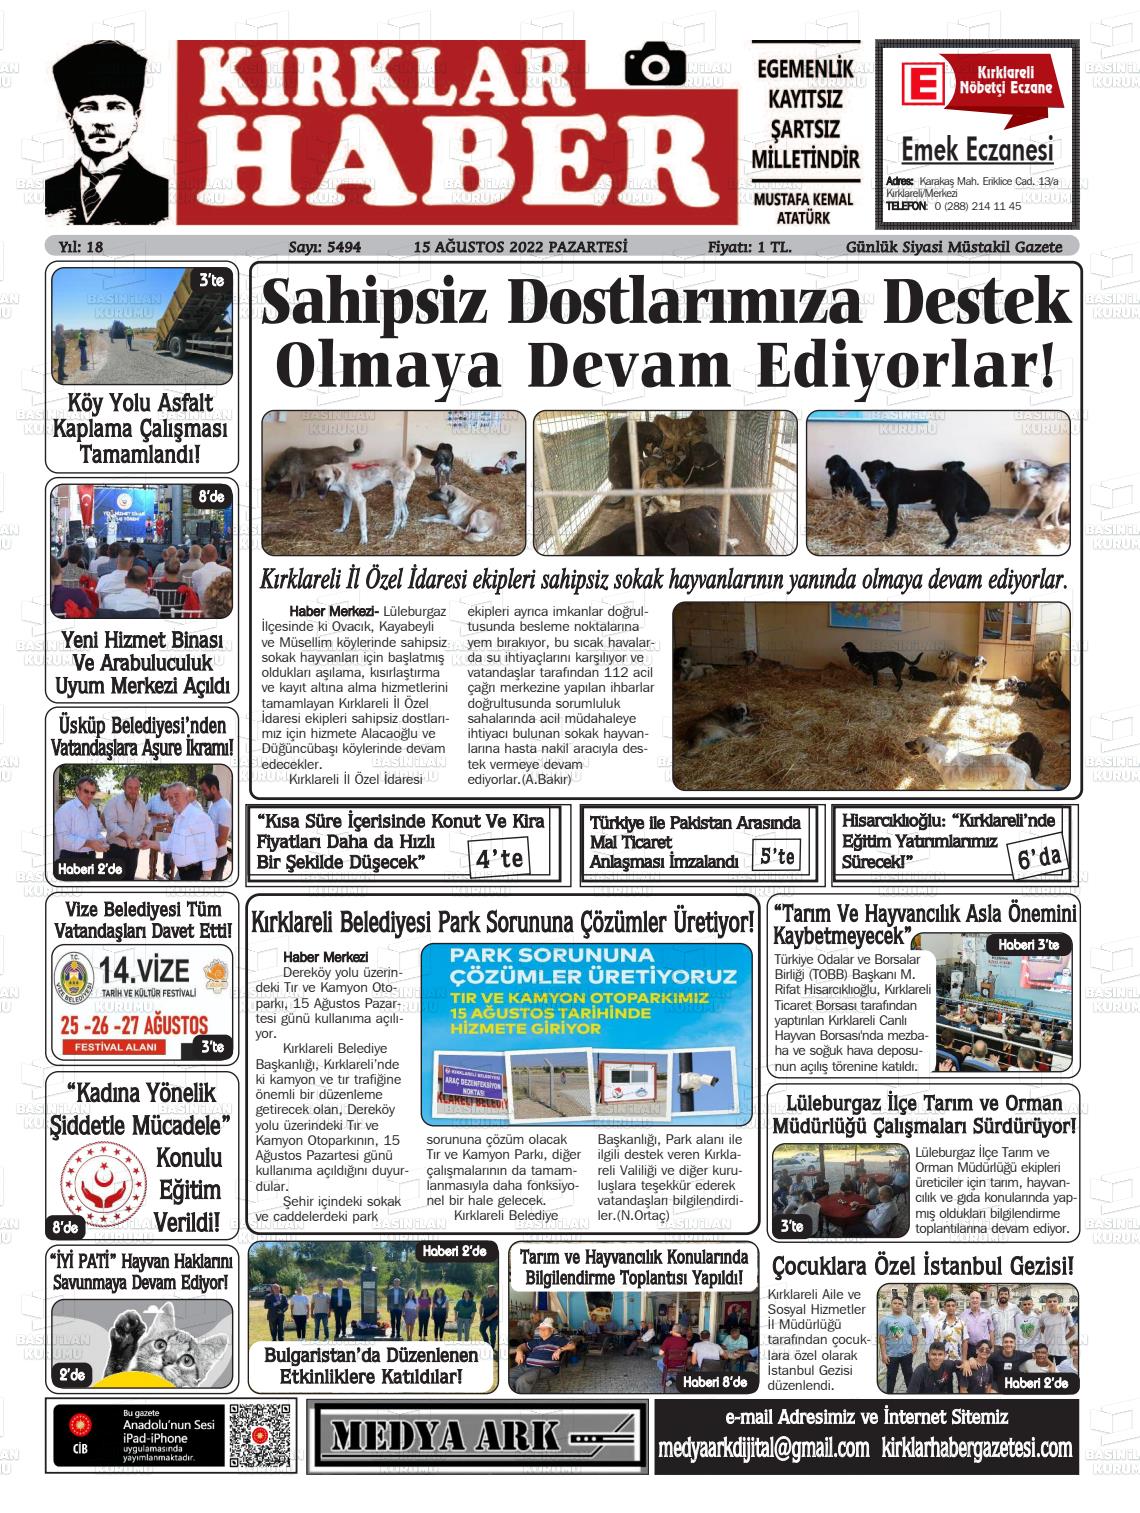 15 Ağustos 2022 Kırklar Haber Gazete Manşeti